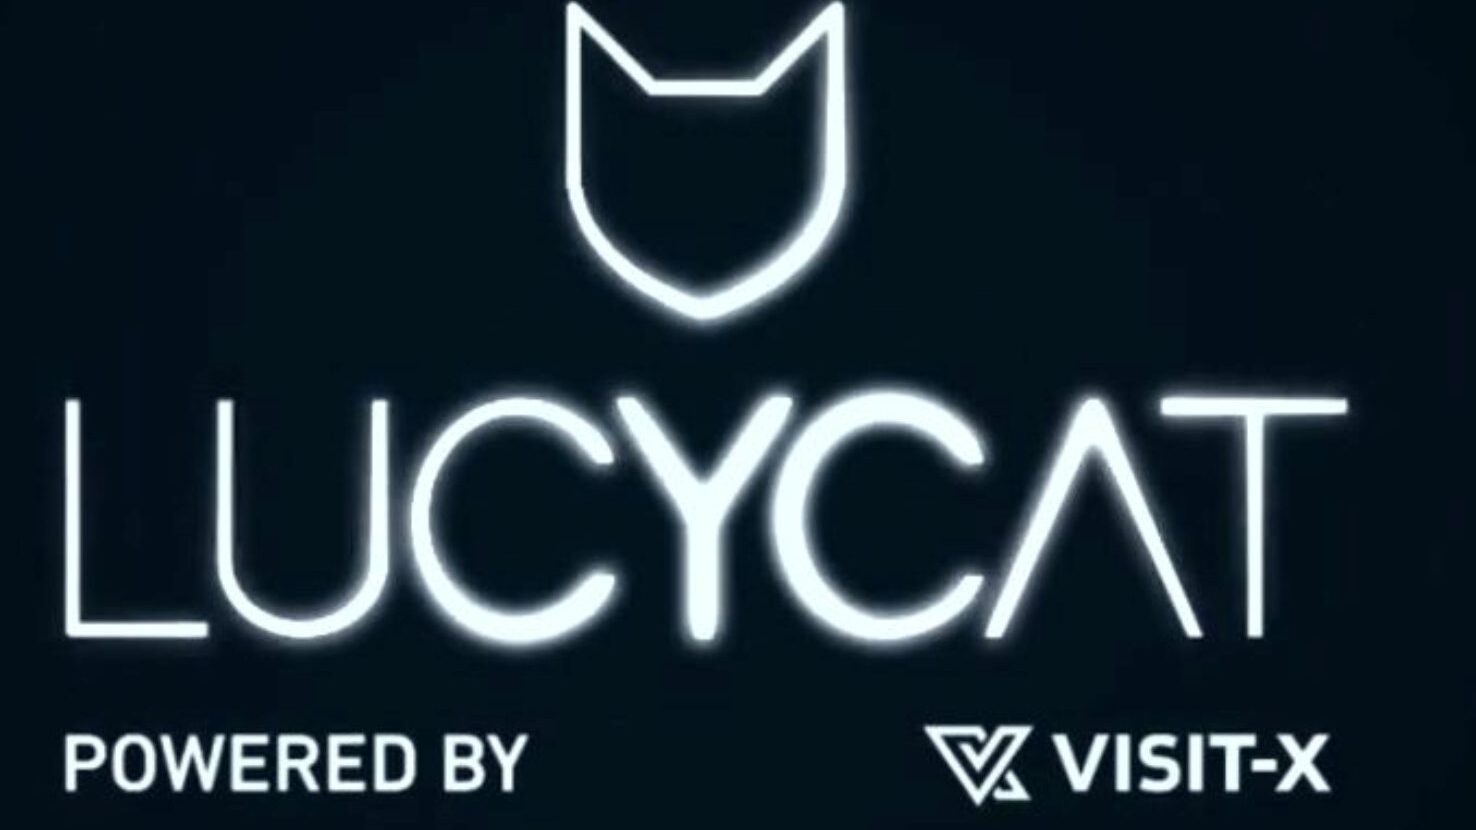 interaktywne, które wyzwanie - Lucy Cat